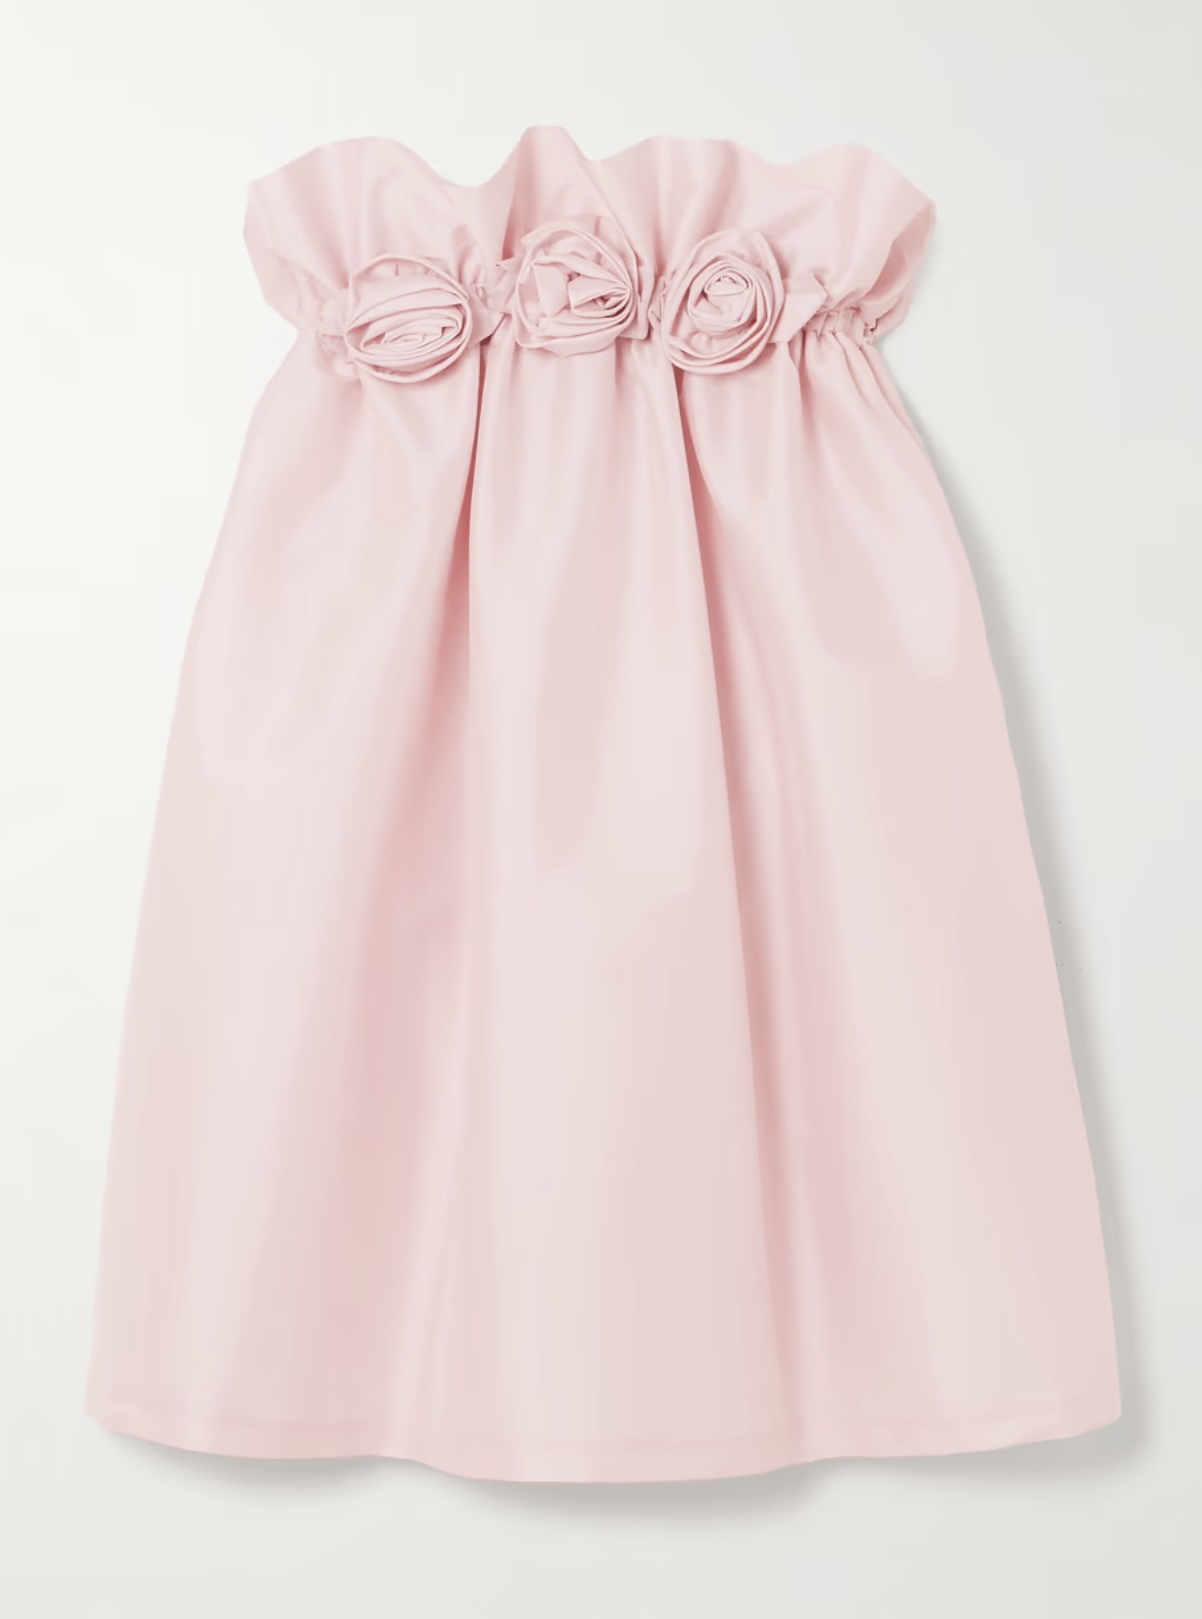 Где найти необычное розовое платье как у Леони Ханне?